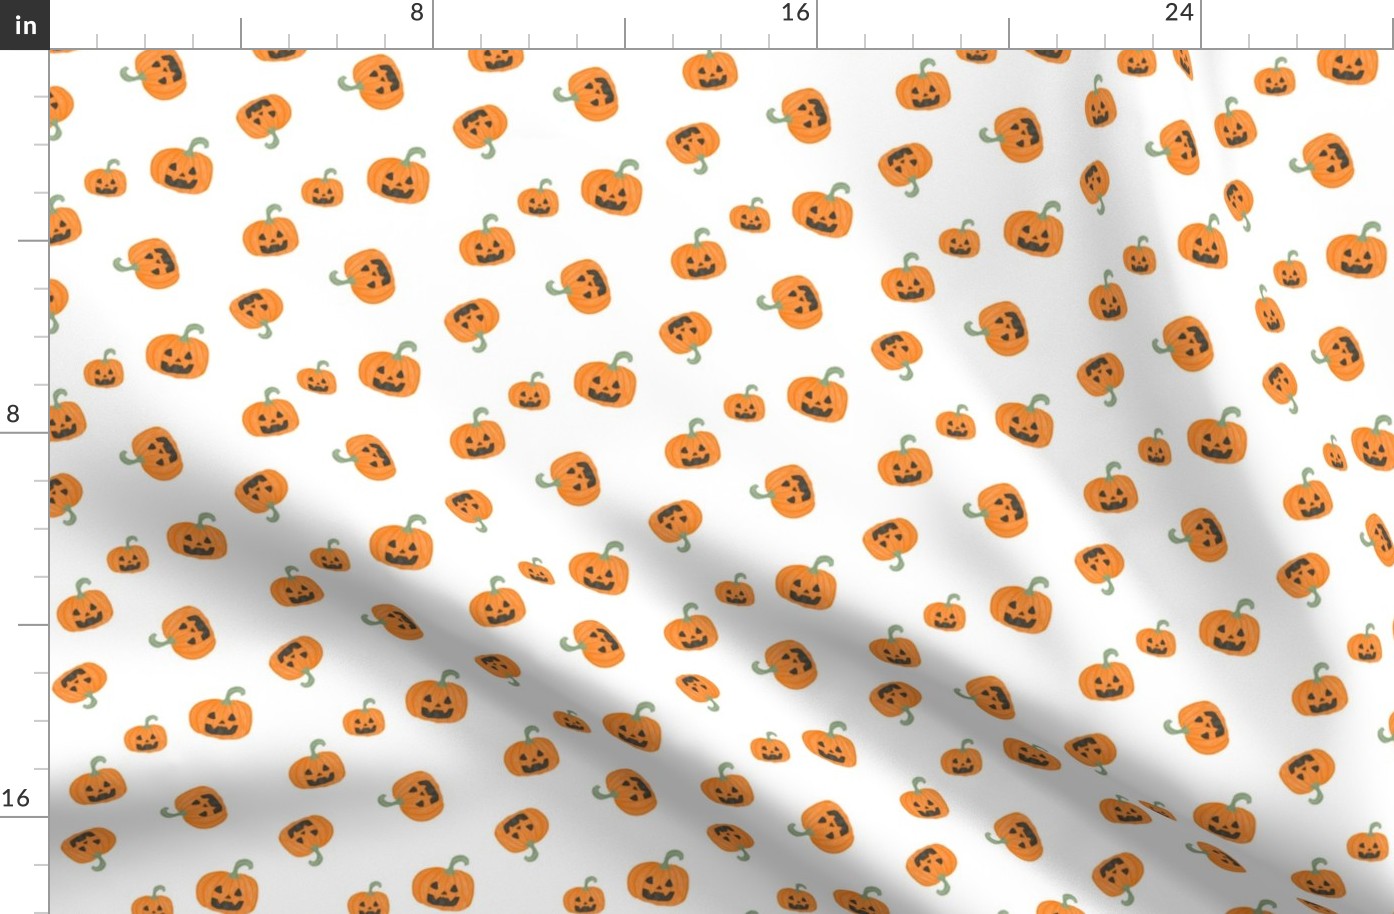 scattered pumpkins